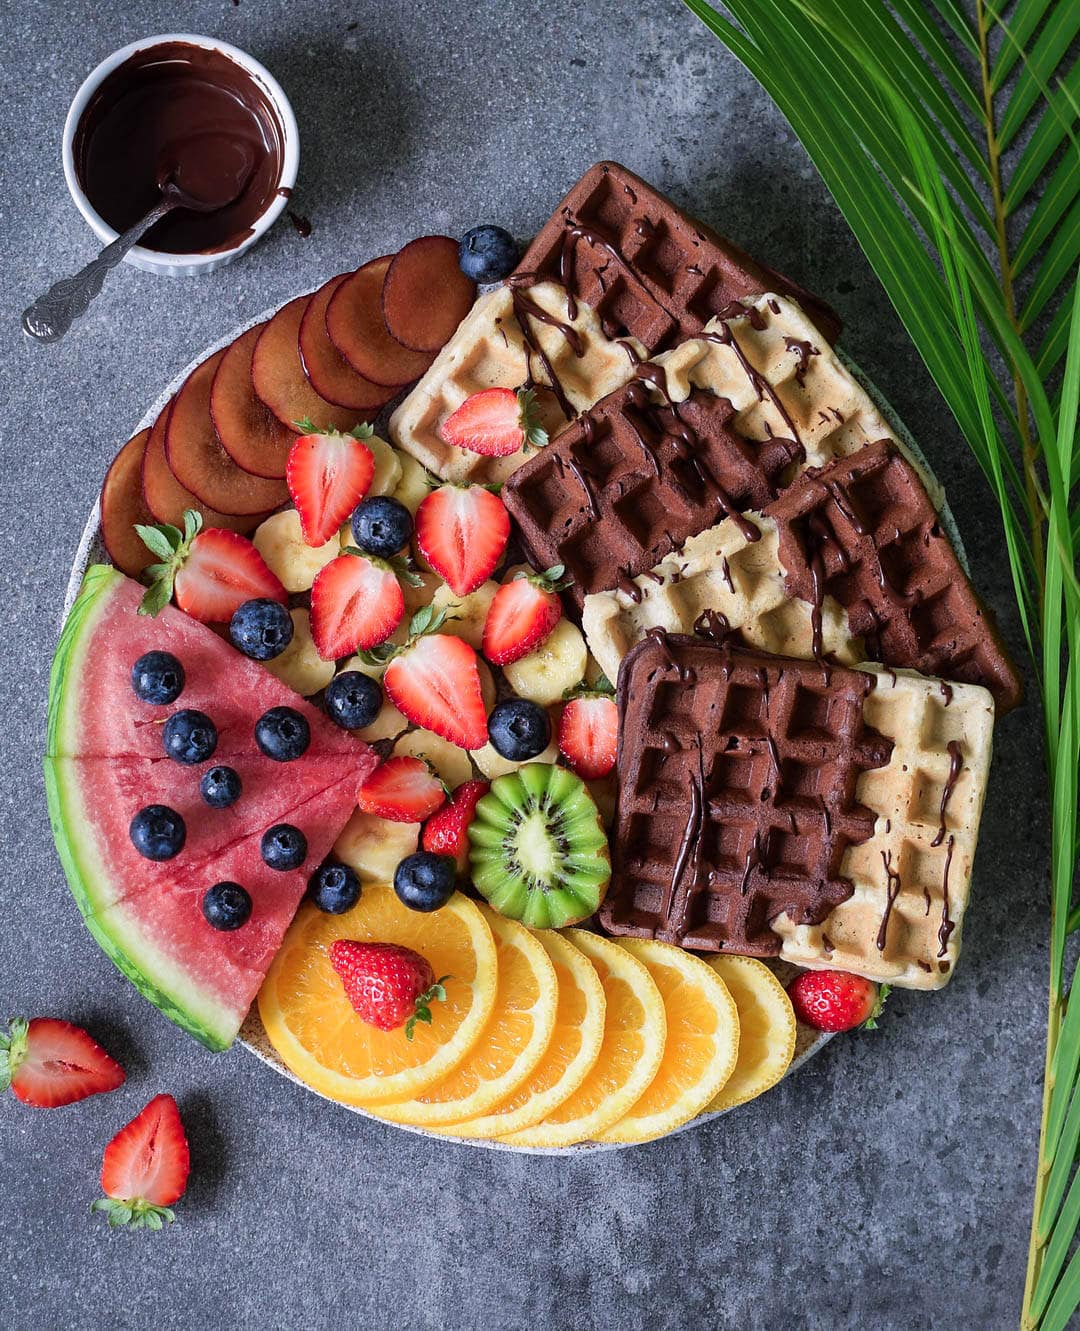 Glutenfreie vegane Waffeln mit Früchten, einer Schokoladensauce, auf einem Brett arrangiert